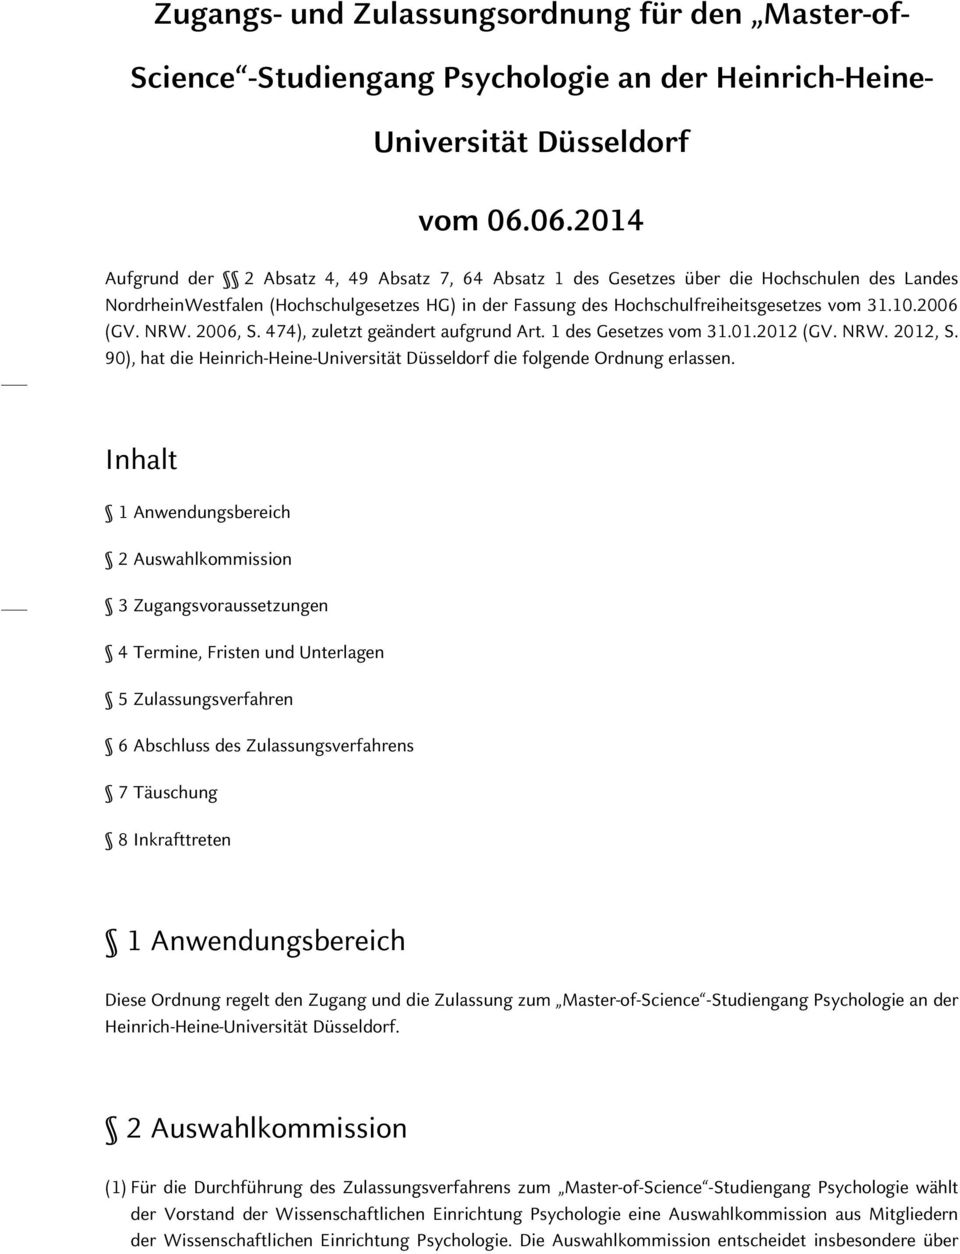 10.2006 (GV. NRW. 2006, S. 474), zuletzt geändert aufgrund Art. 1 des Gesetzes vom 31.01.2012 (GV. NRW. 2012, S. 90), hat die Heinrich-Heine-Universität Düsseldorf die folgende Ordnung erlassen.